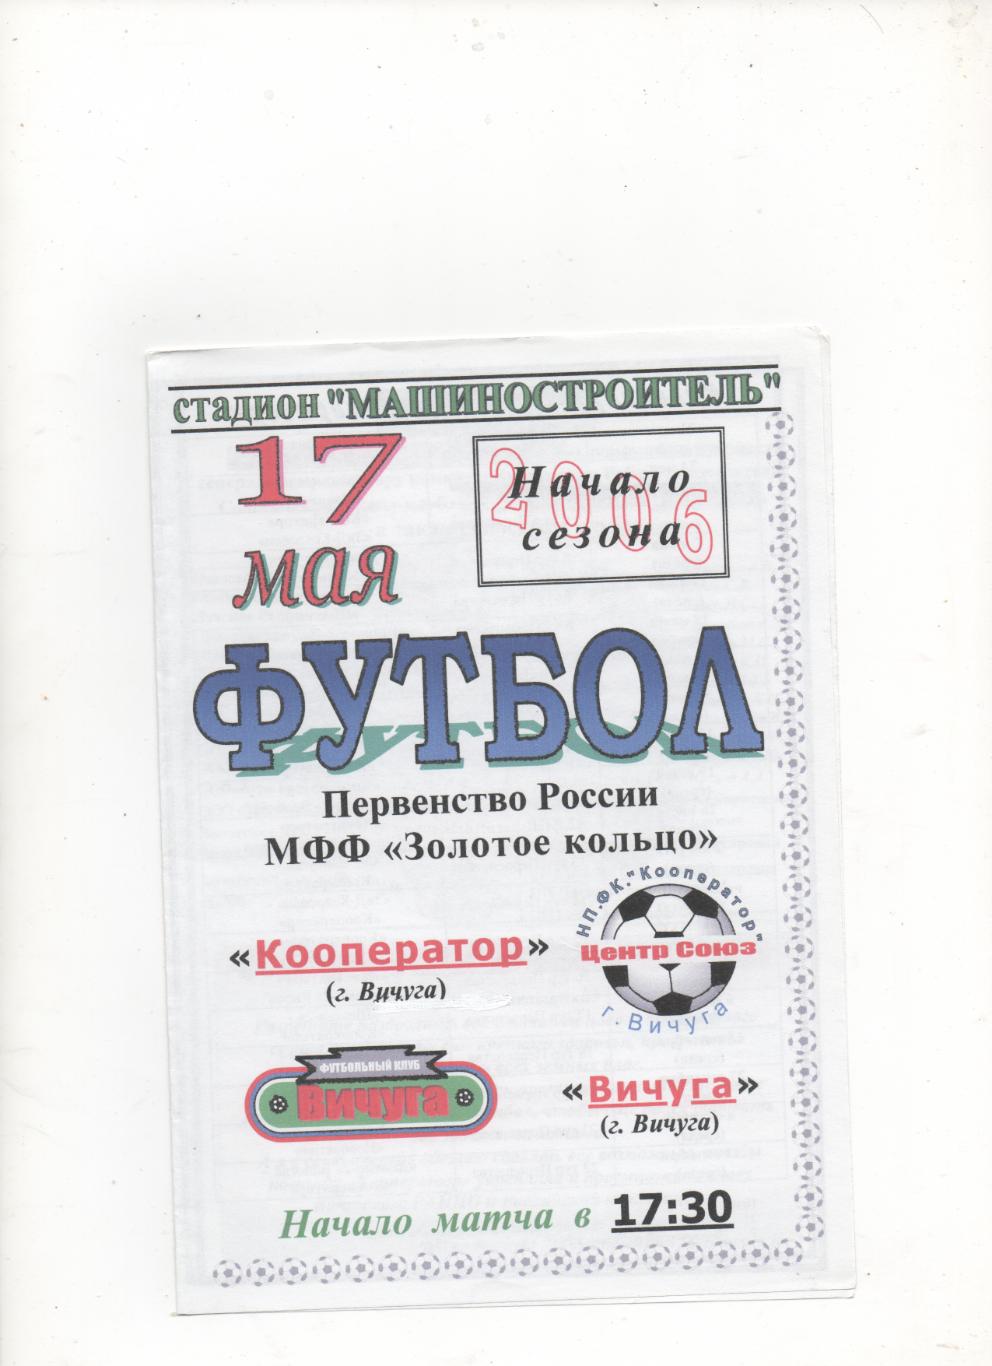 Кооператор (Вичуга) - ФК Вичуга - 2006.